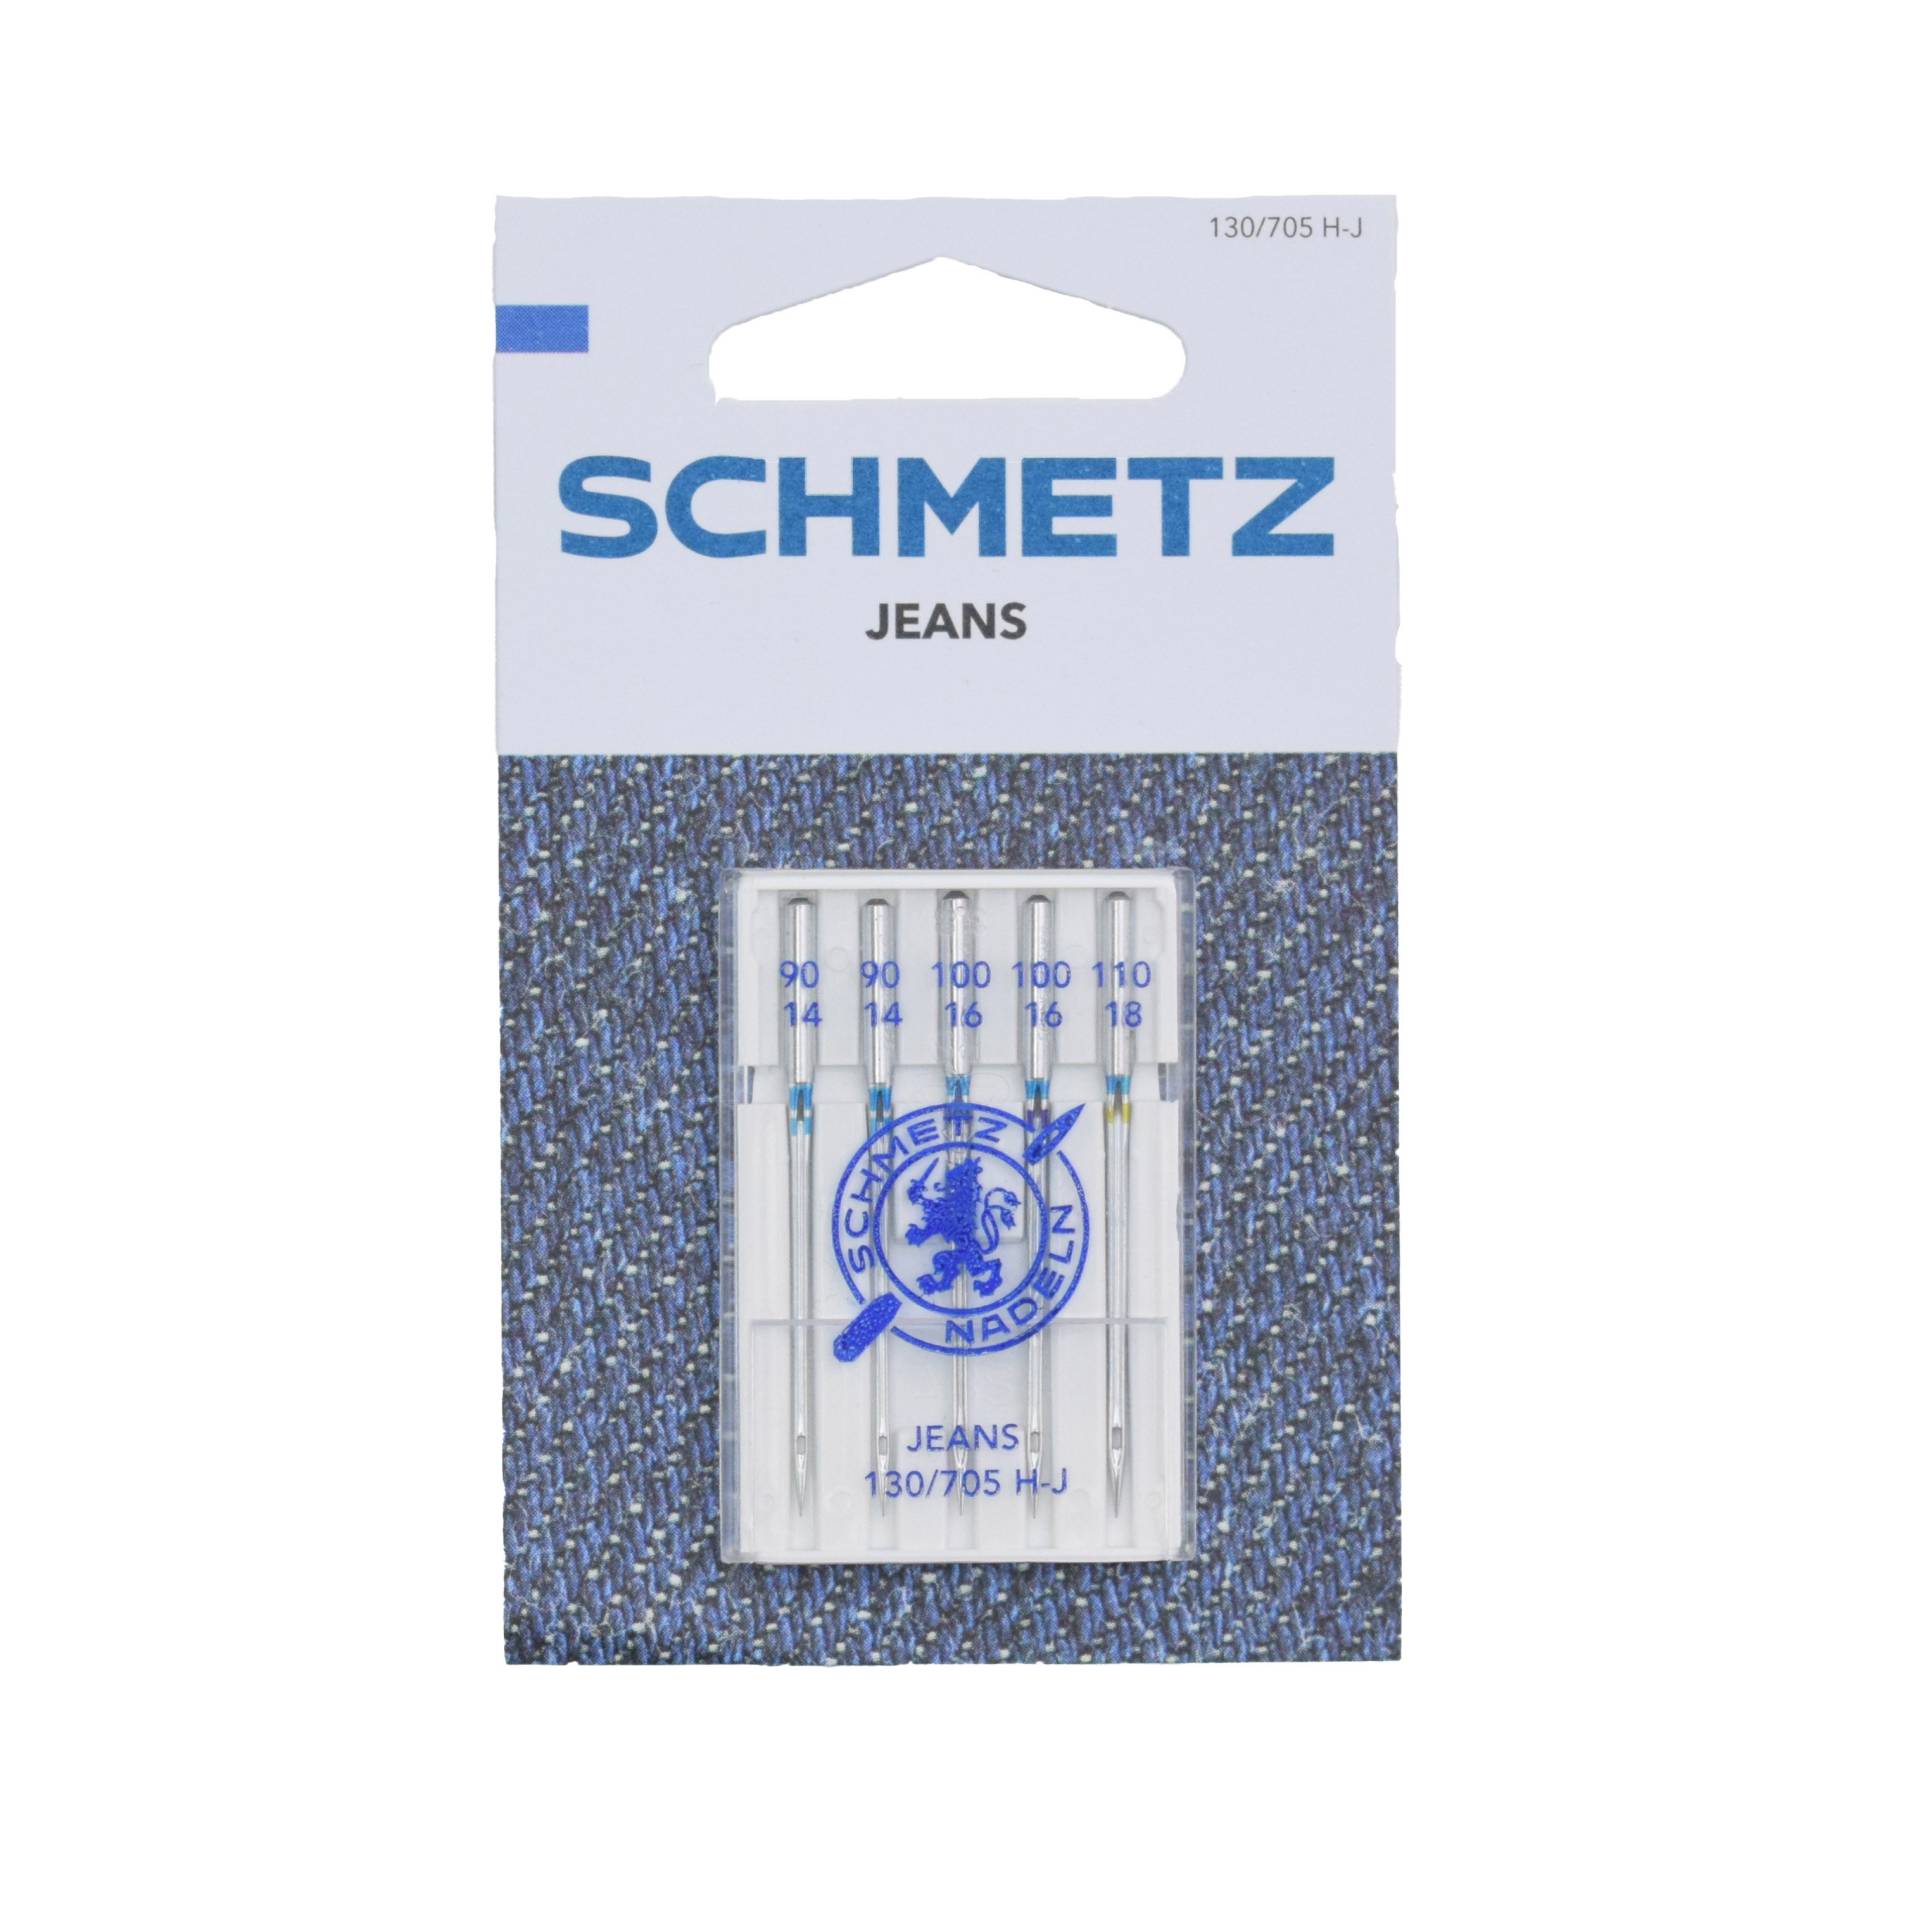 Schmetz Nähmaschinennadel Jeans 130/705 H-J von Stoffe Hemmers